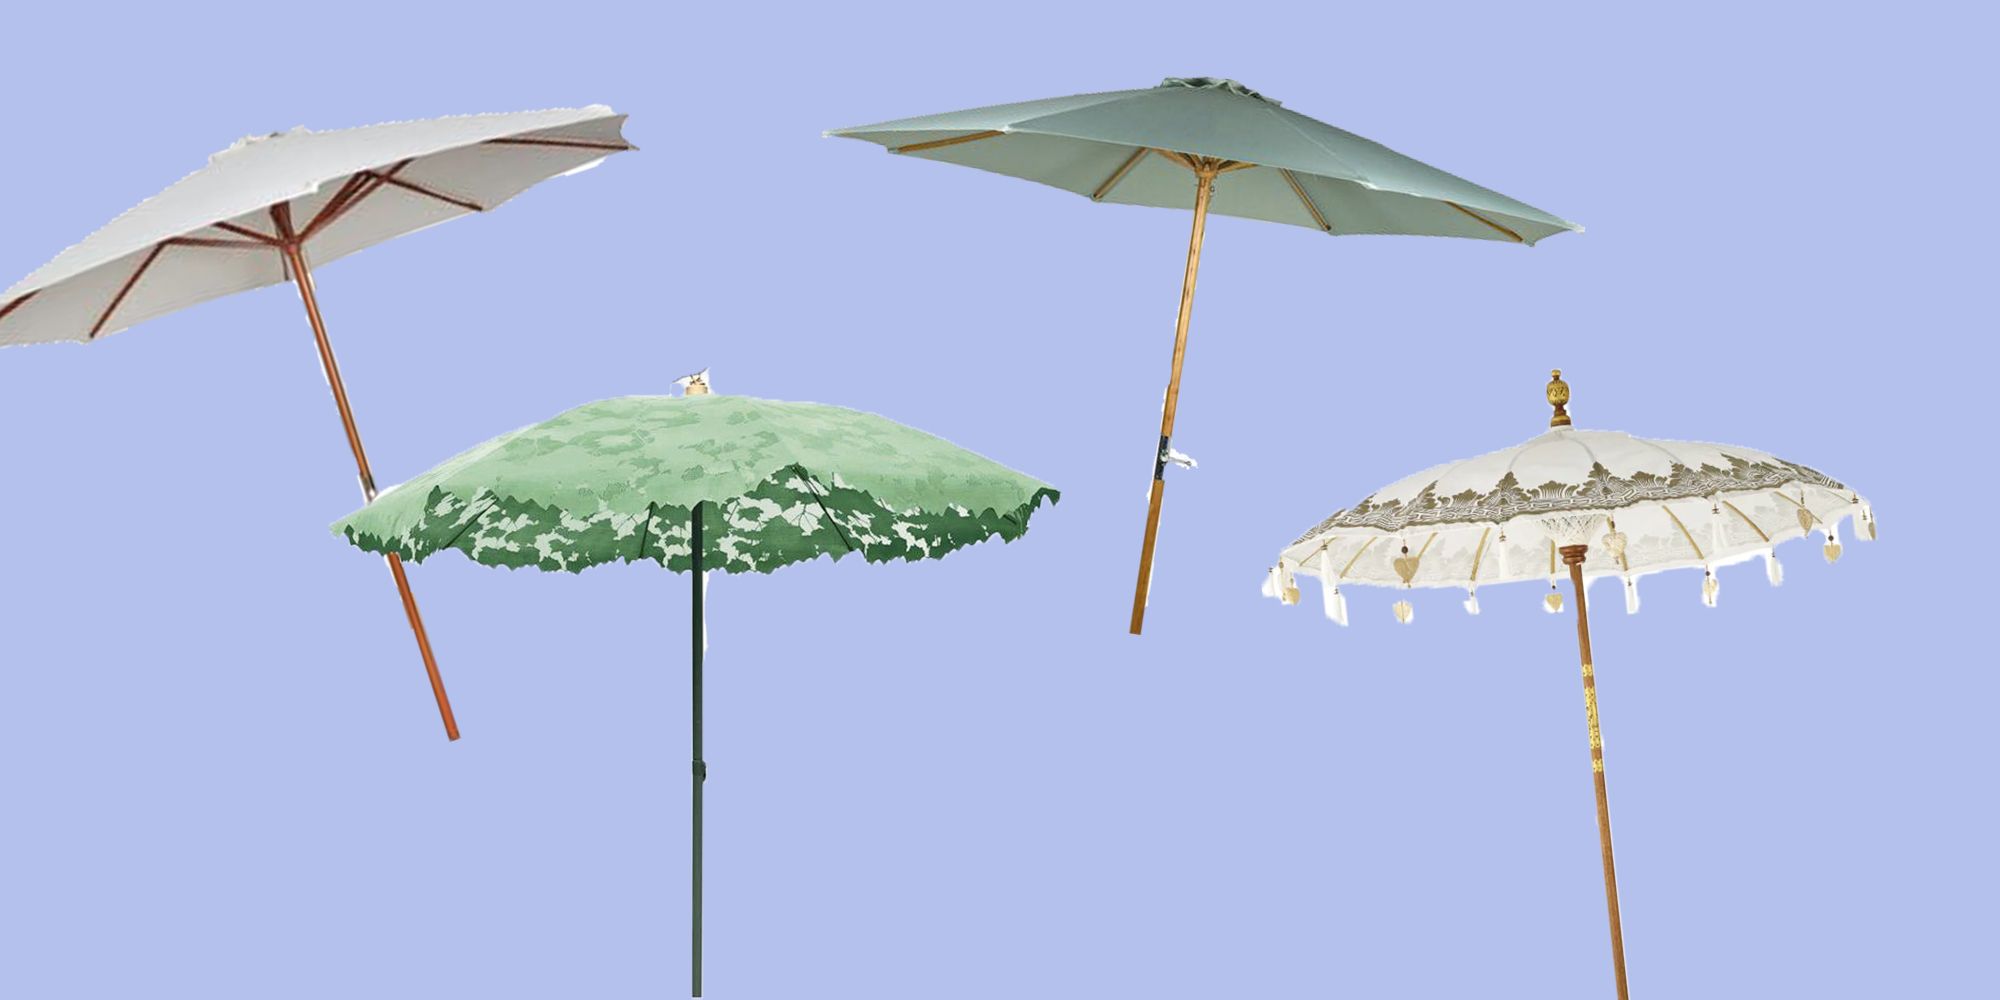 voetstappen Opsommen Speels 6 x parasols om onder af te koelen